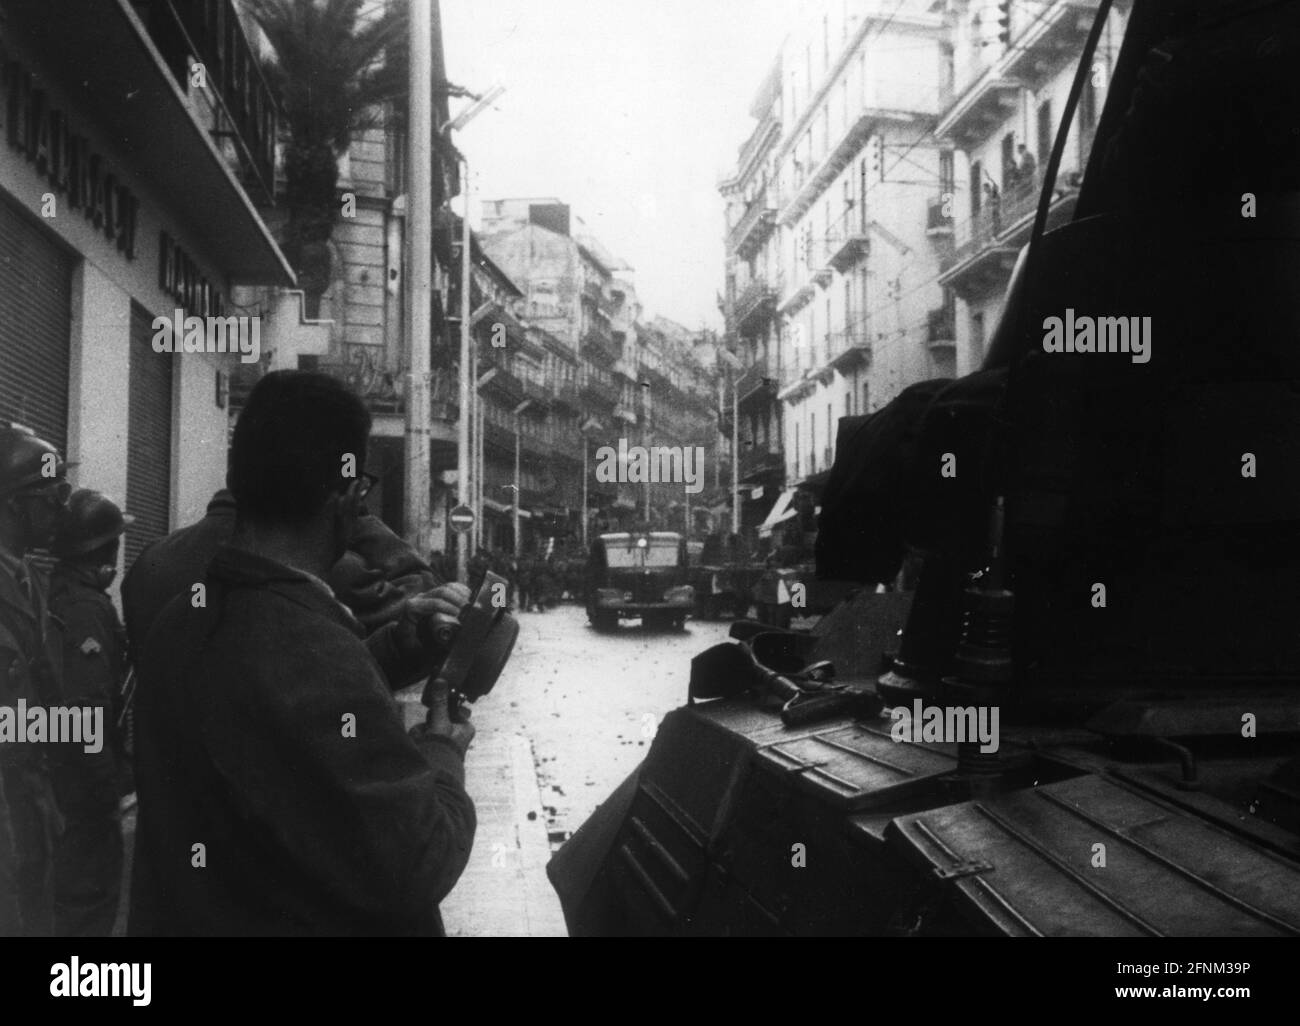 Geografia / viaggio, Algeria, guerra d'indipendenza, rivolte ad Algeri, 19.12.1960, INFORMAZIONI-AGGIUNTIVE-DIRITTI-AUTORIZZAZIONE-NON-DISPONIBILI Foto Stock